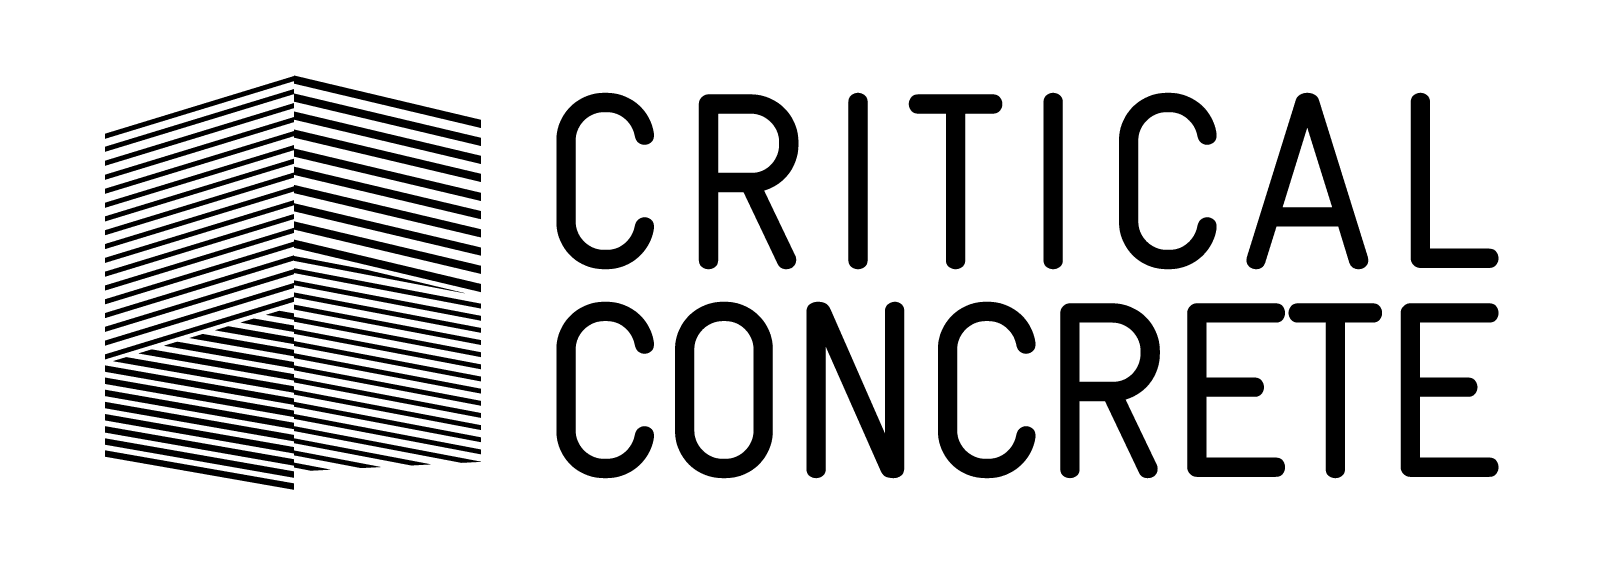 #13 Crititcal Concrete-pichi